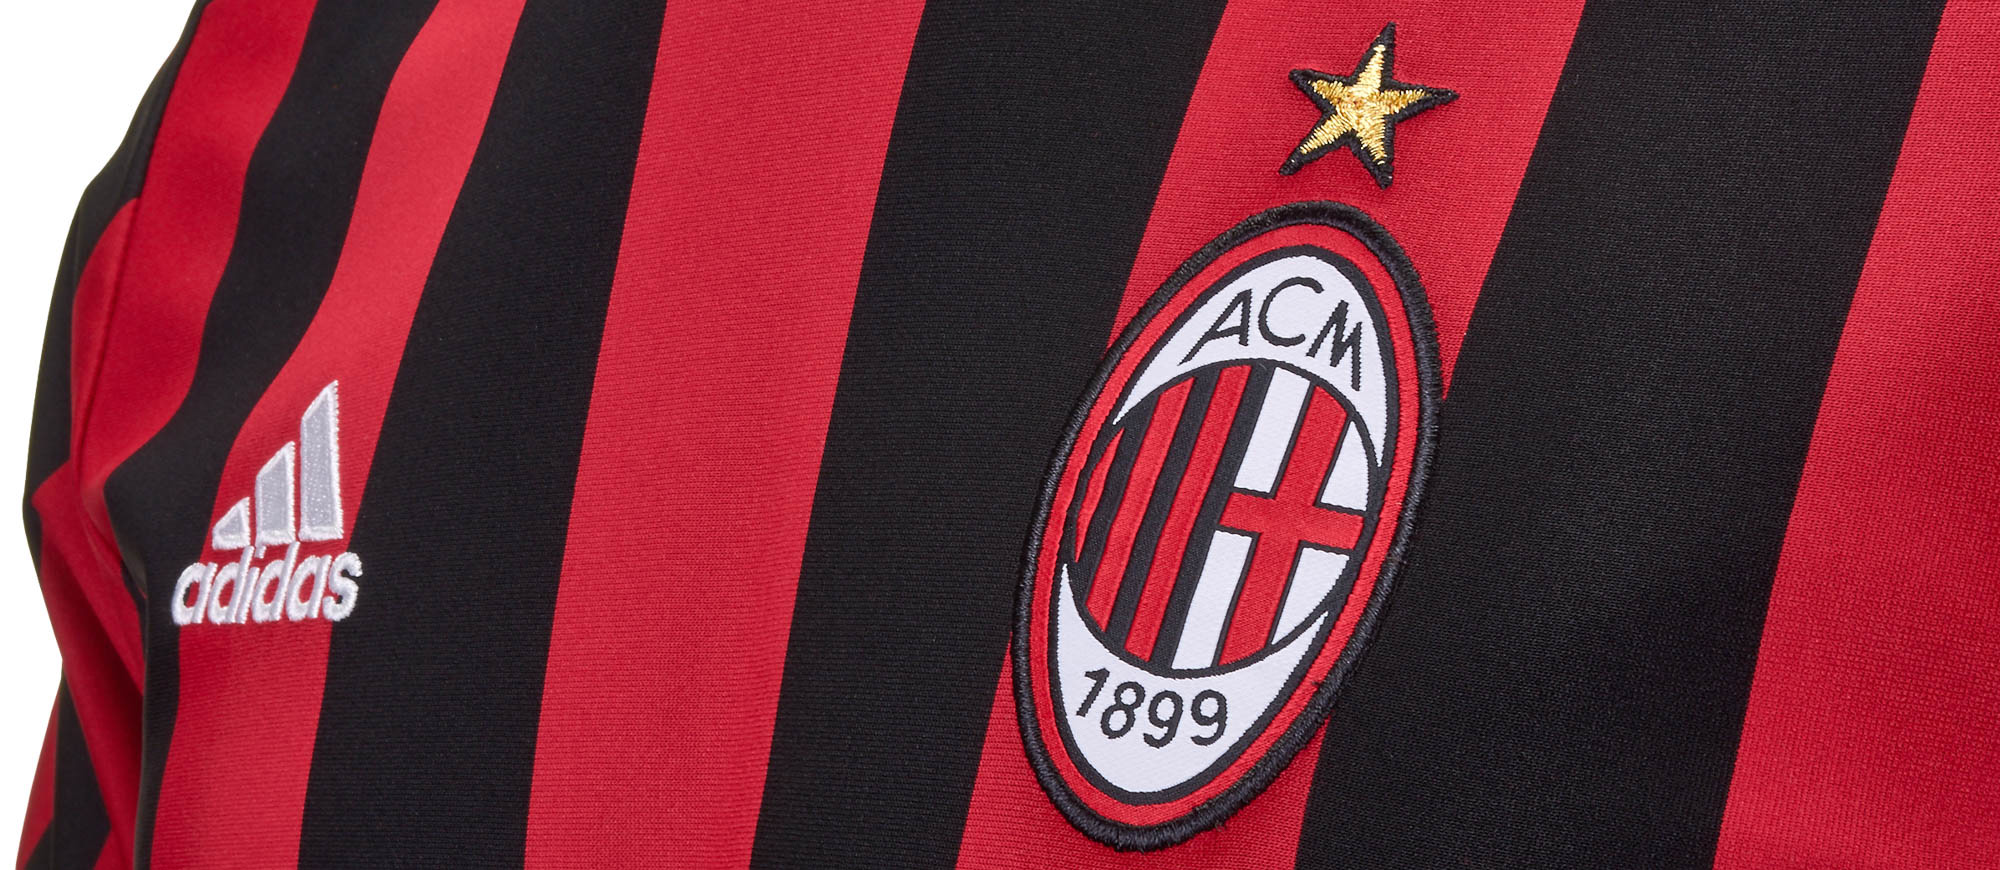 AC Milan 2017-18 Home Kit